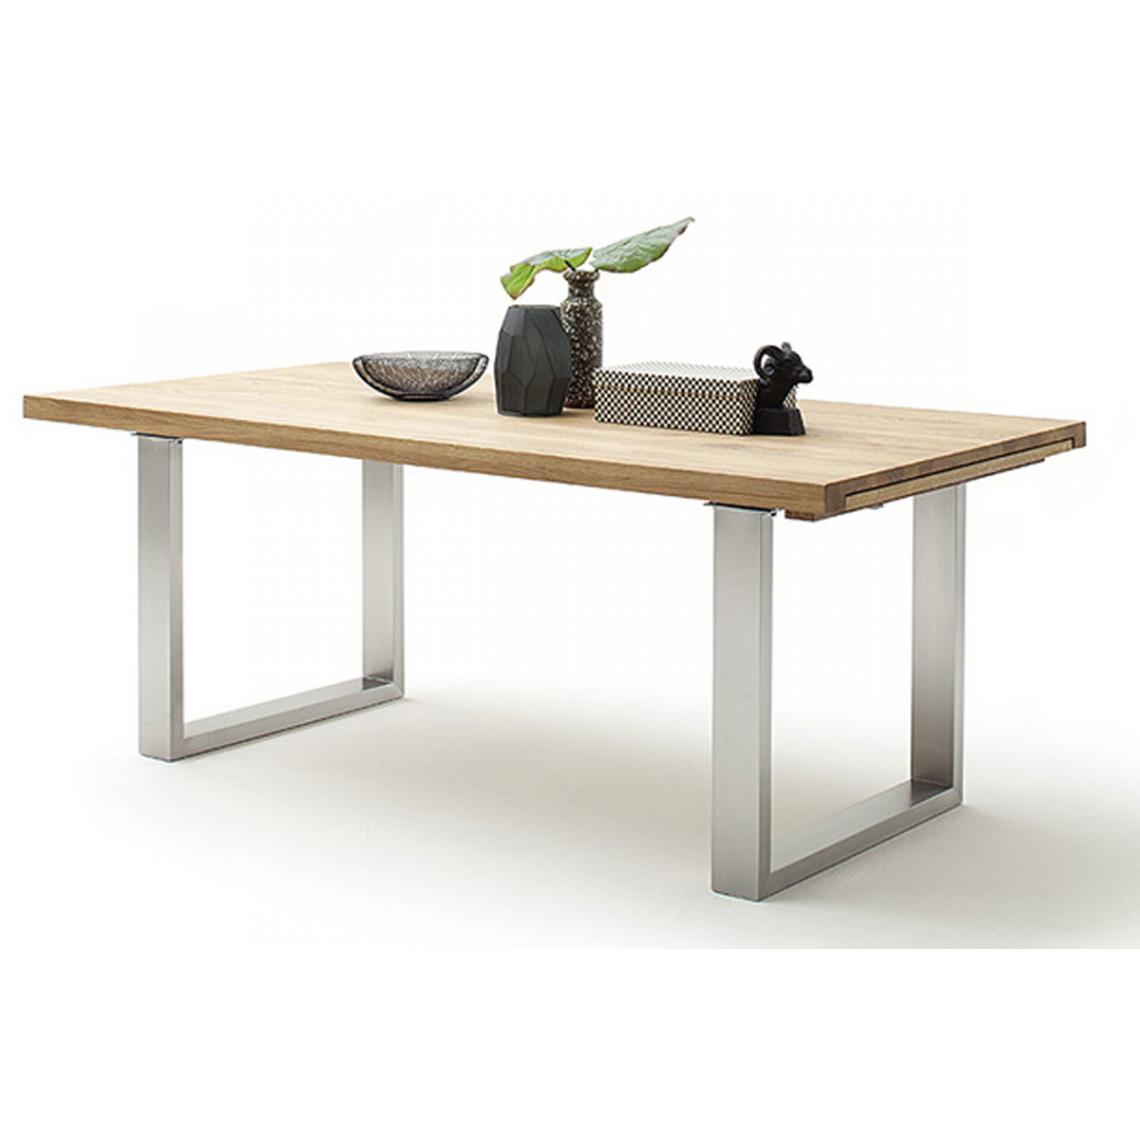 Pegane - Table à manger extensible en chêne sauvage massif huilé / acier - L.220-320 x H.77 x P.100 cm - Tables à manger